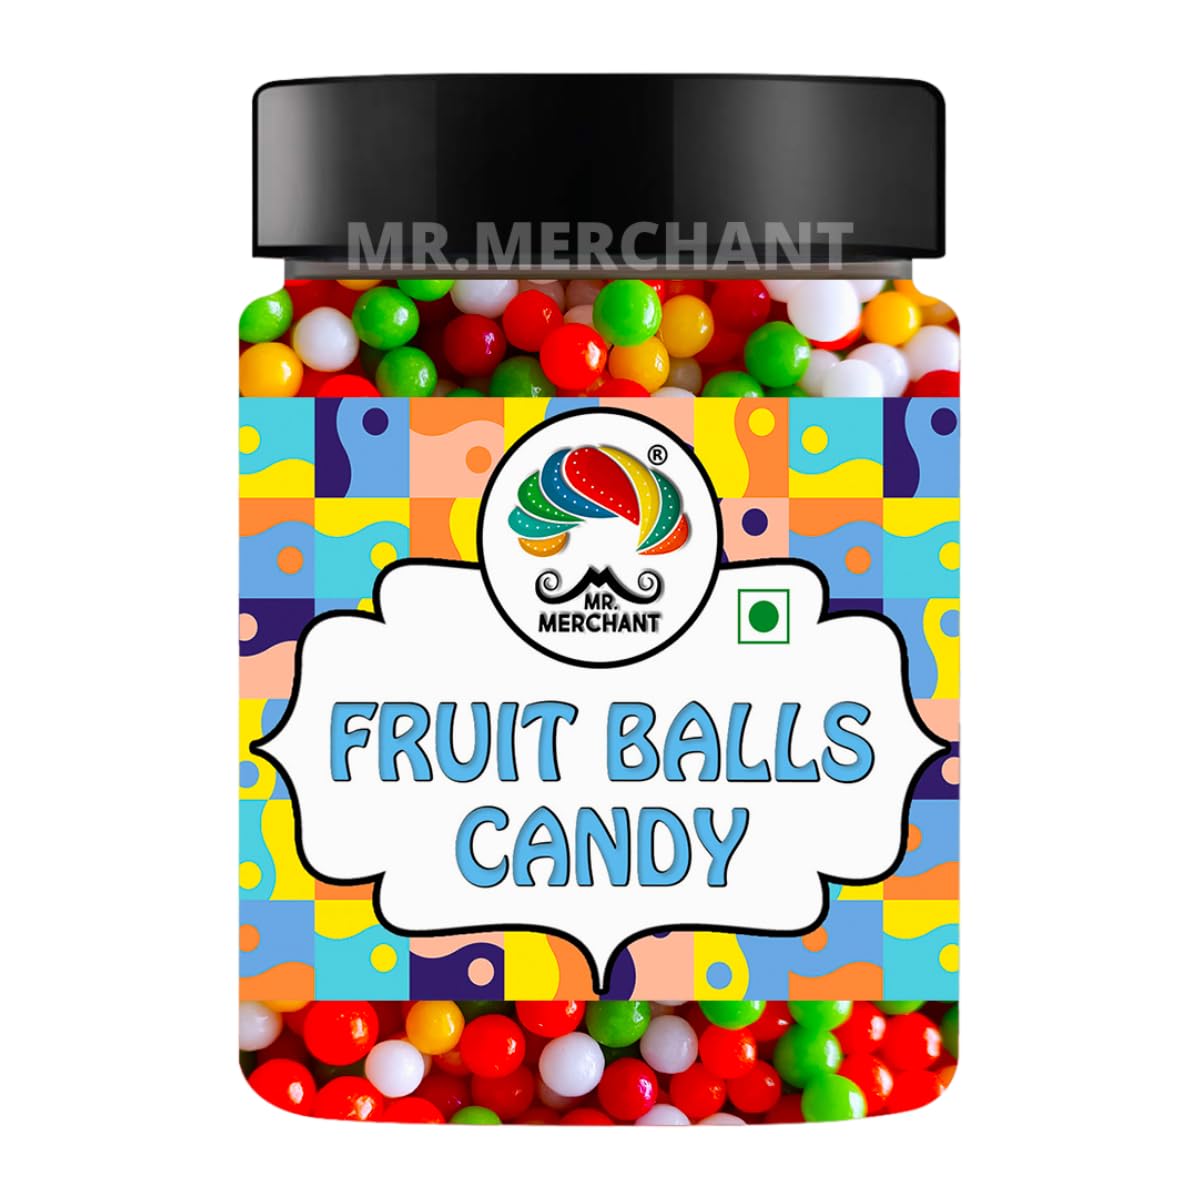 Mr. Merchant Fruit Balls, 300g [Assorted Flavour Candy Balls]